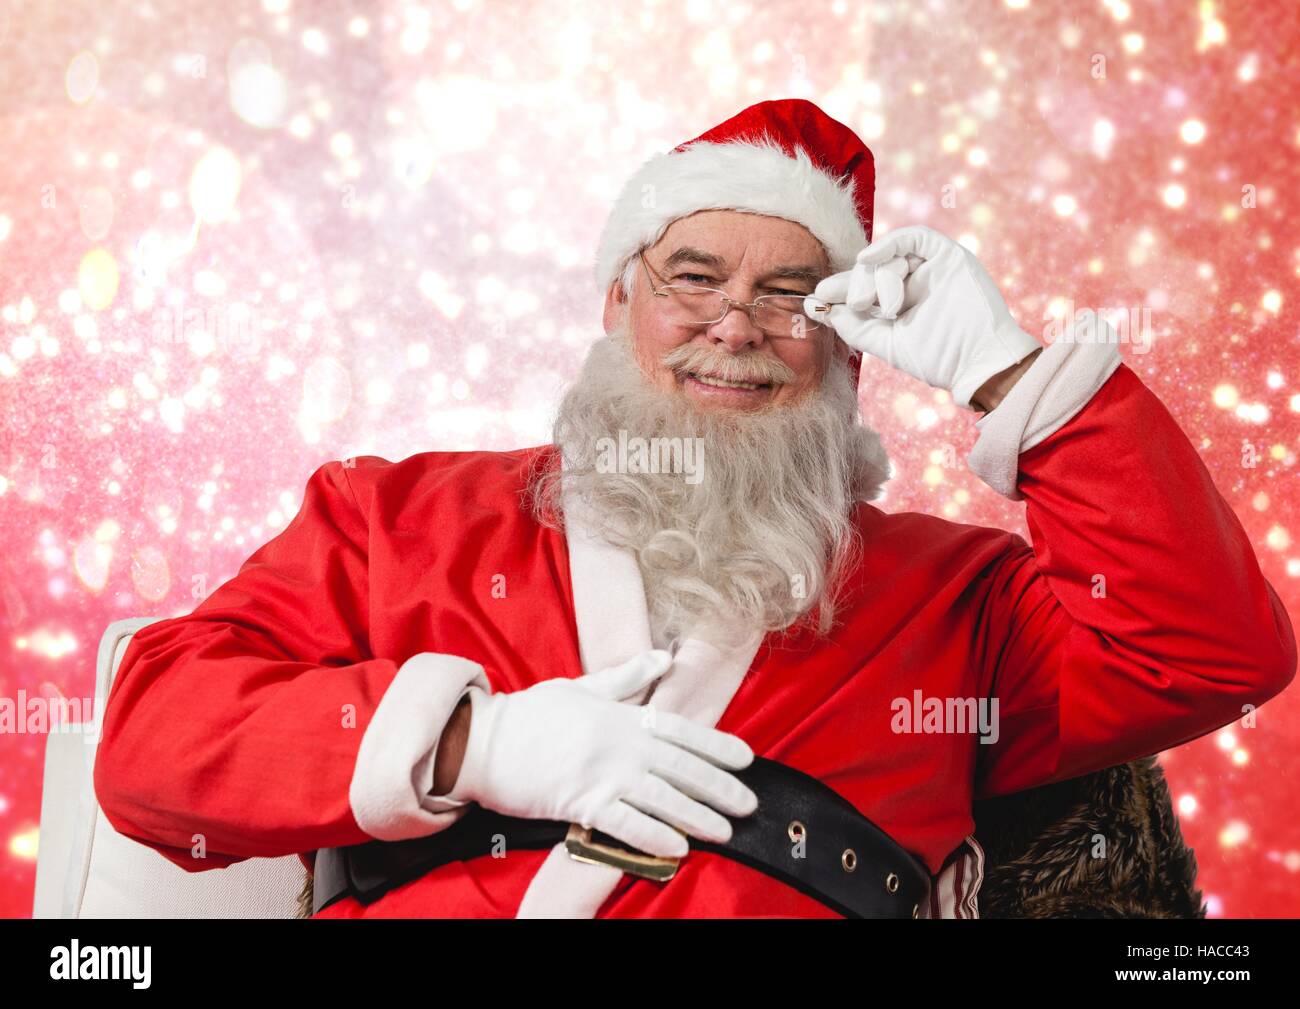 Santa claus smiling at camera Stock Photo